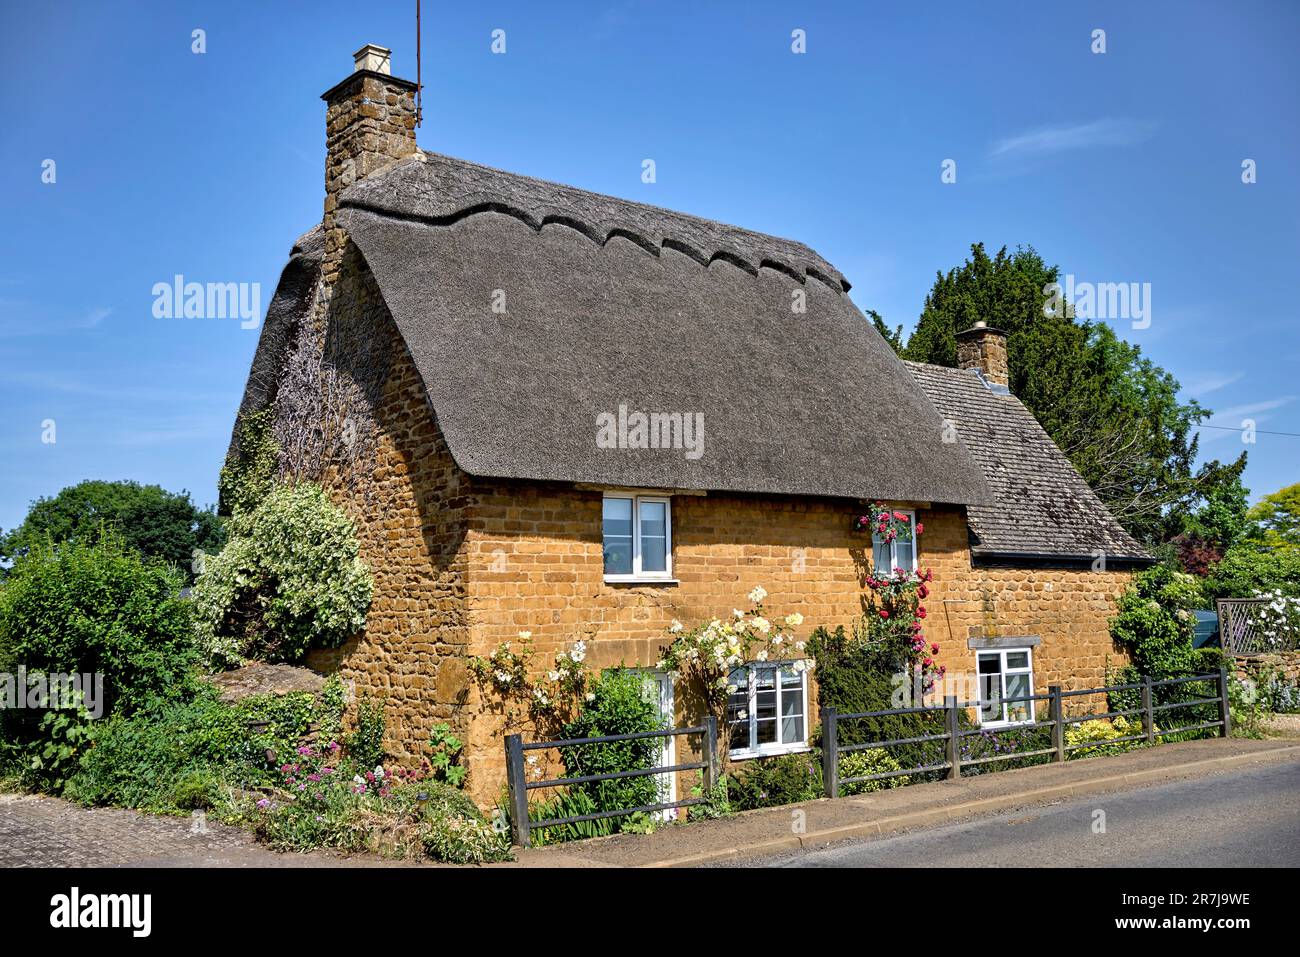 Reetgedeckte Hütte UK. Malerisches traditionelles Reetgedeckte Hütte außen in einer englischen ländlichen Umgebung. Wroxton St Mary Banbury Oxfordshire England Stockfoto